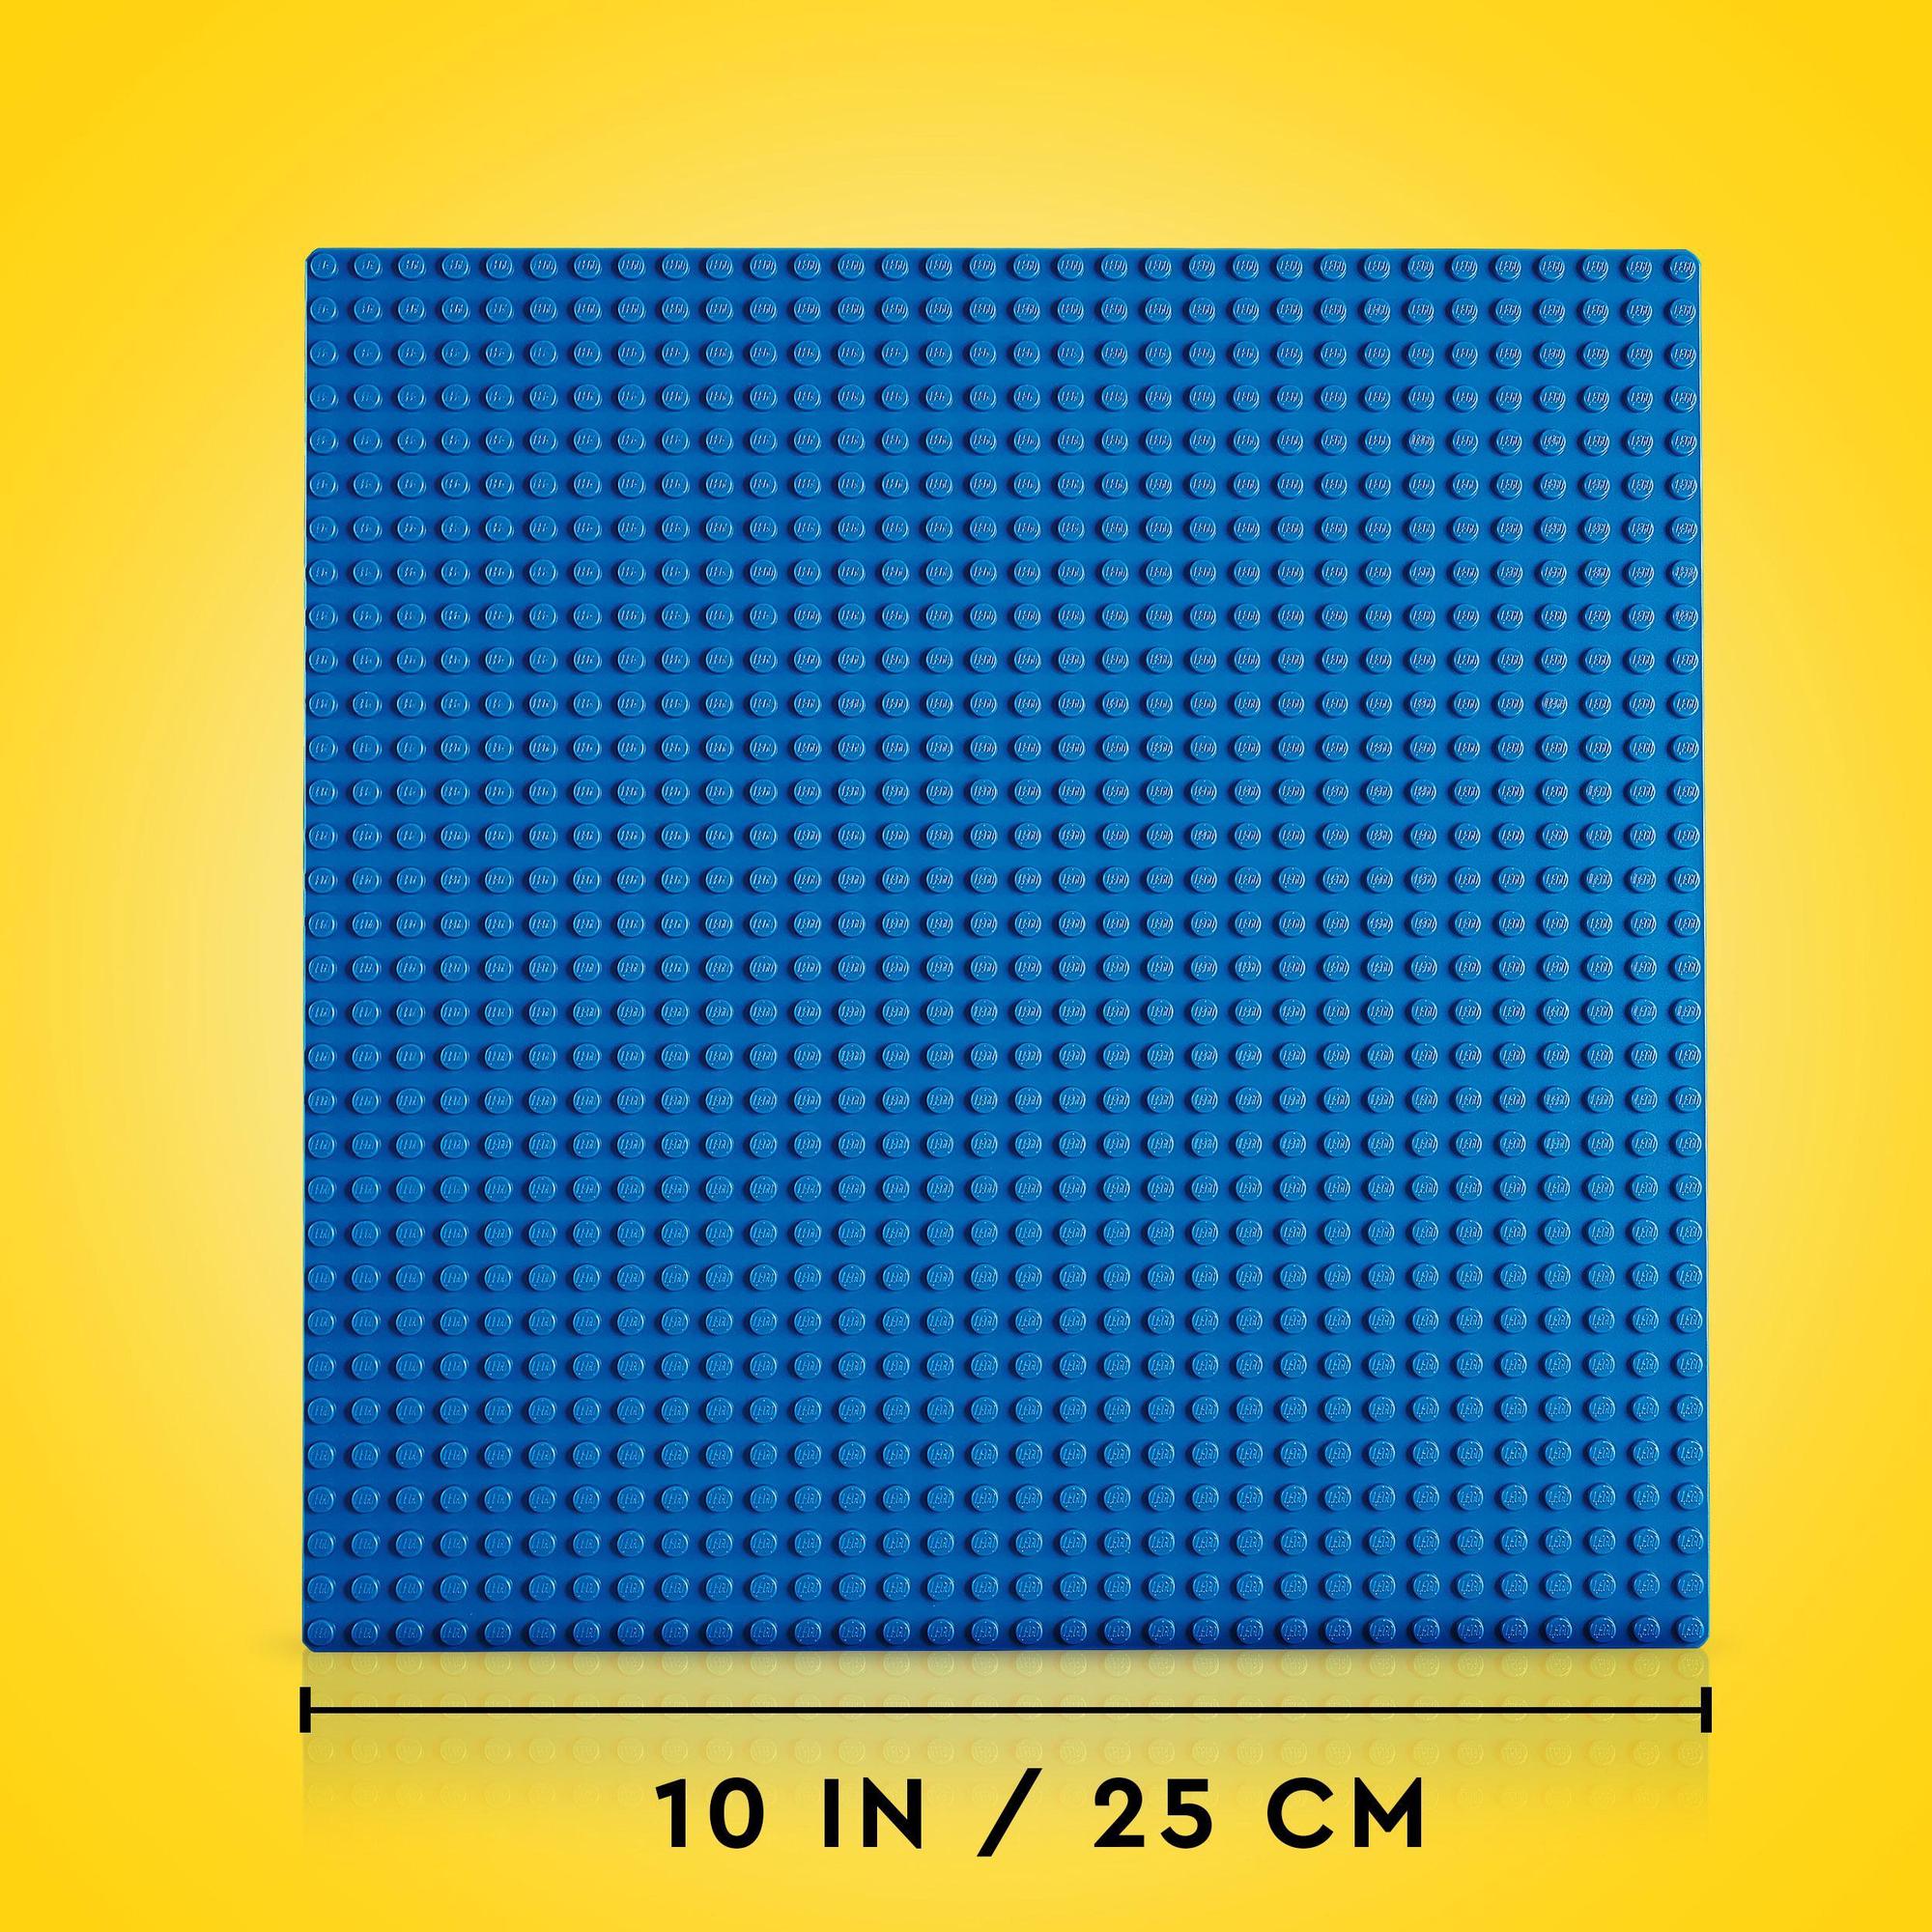 Lego® | 11025 | Blaue Bauplatte